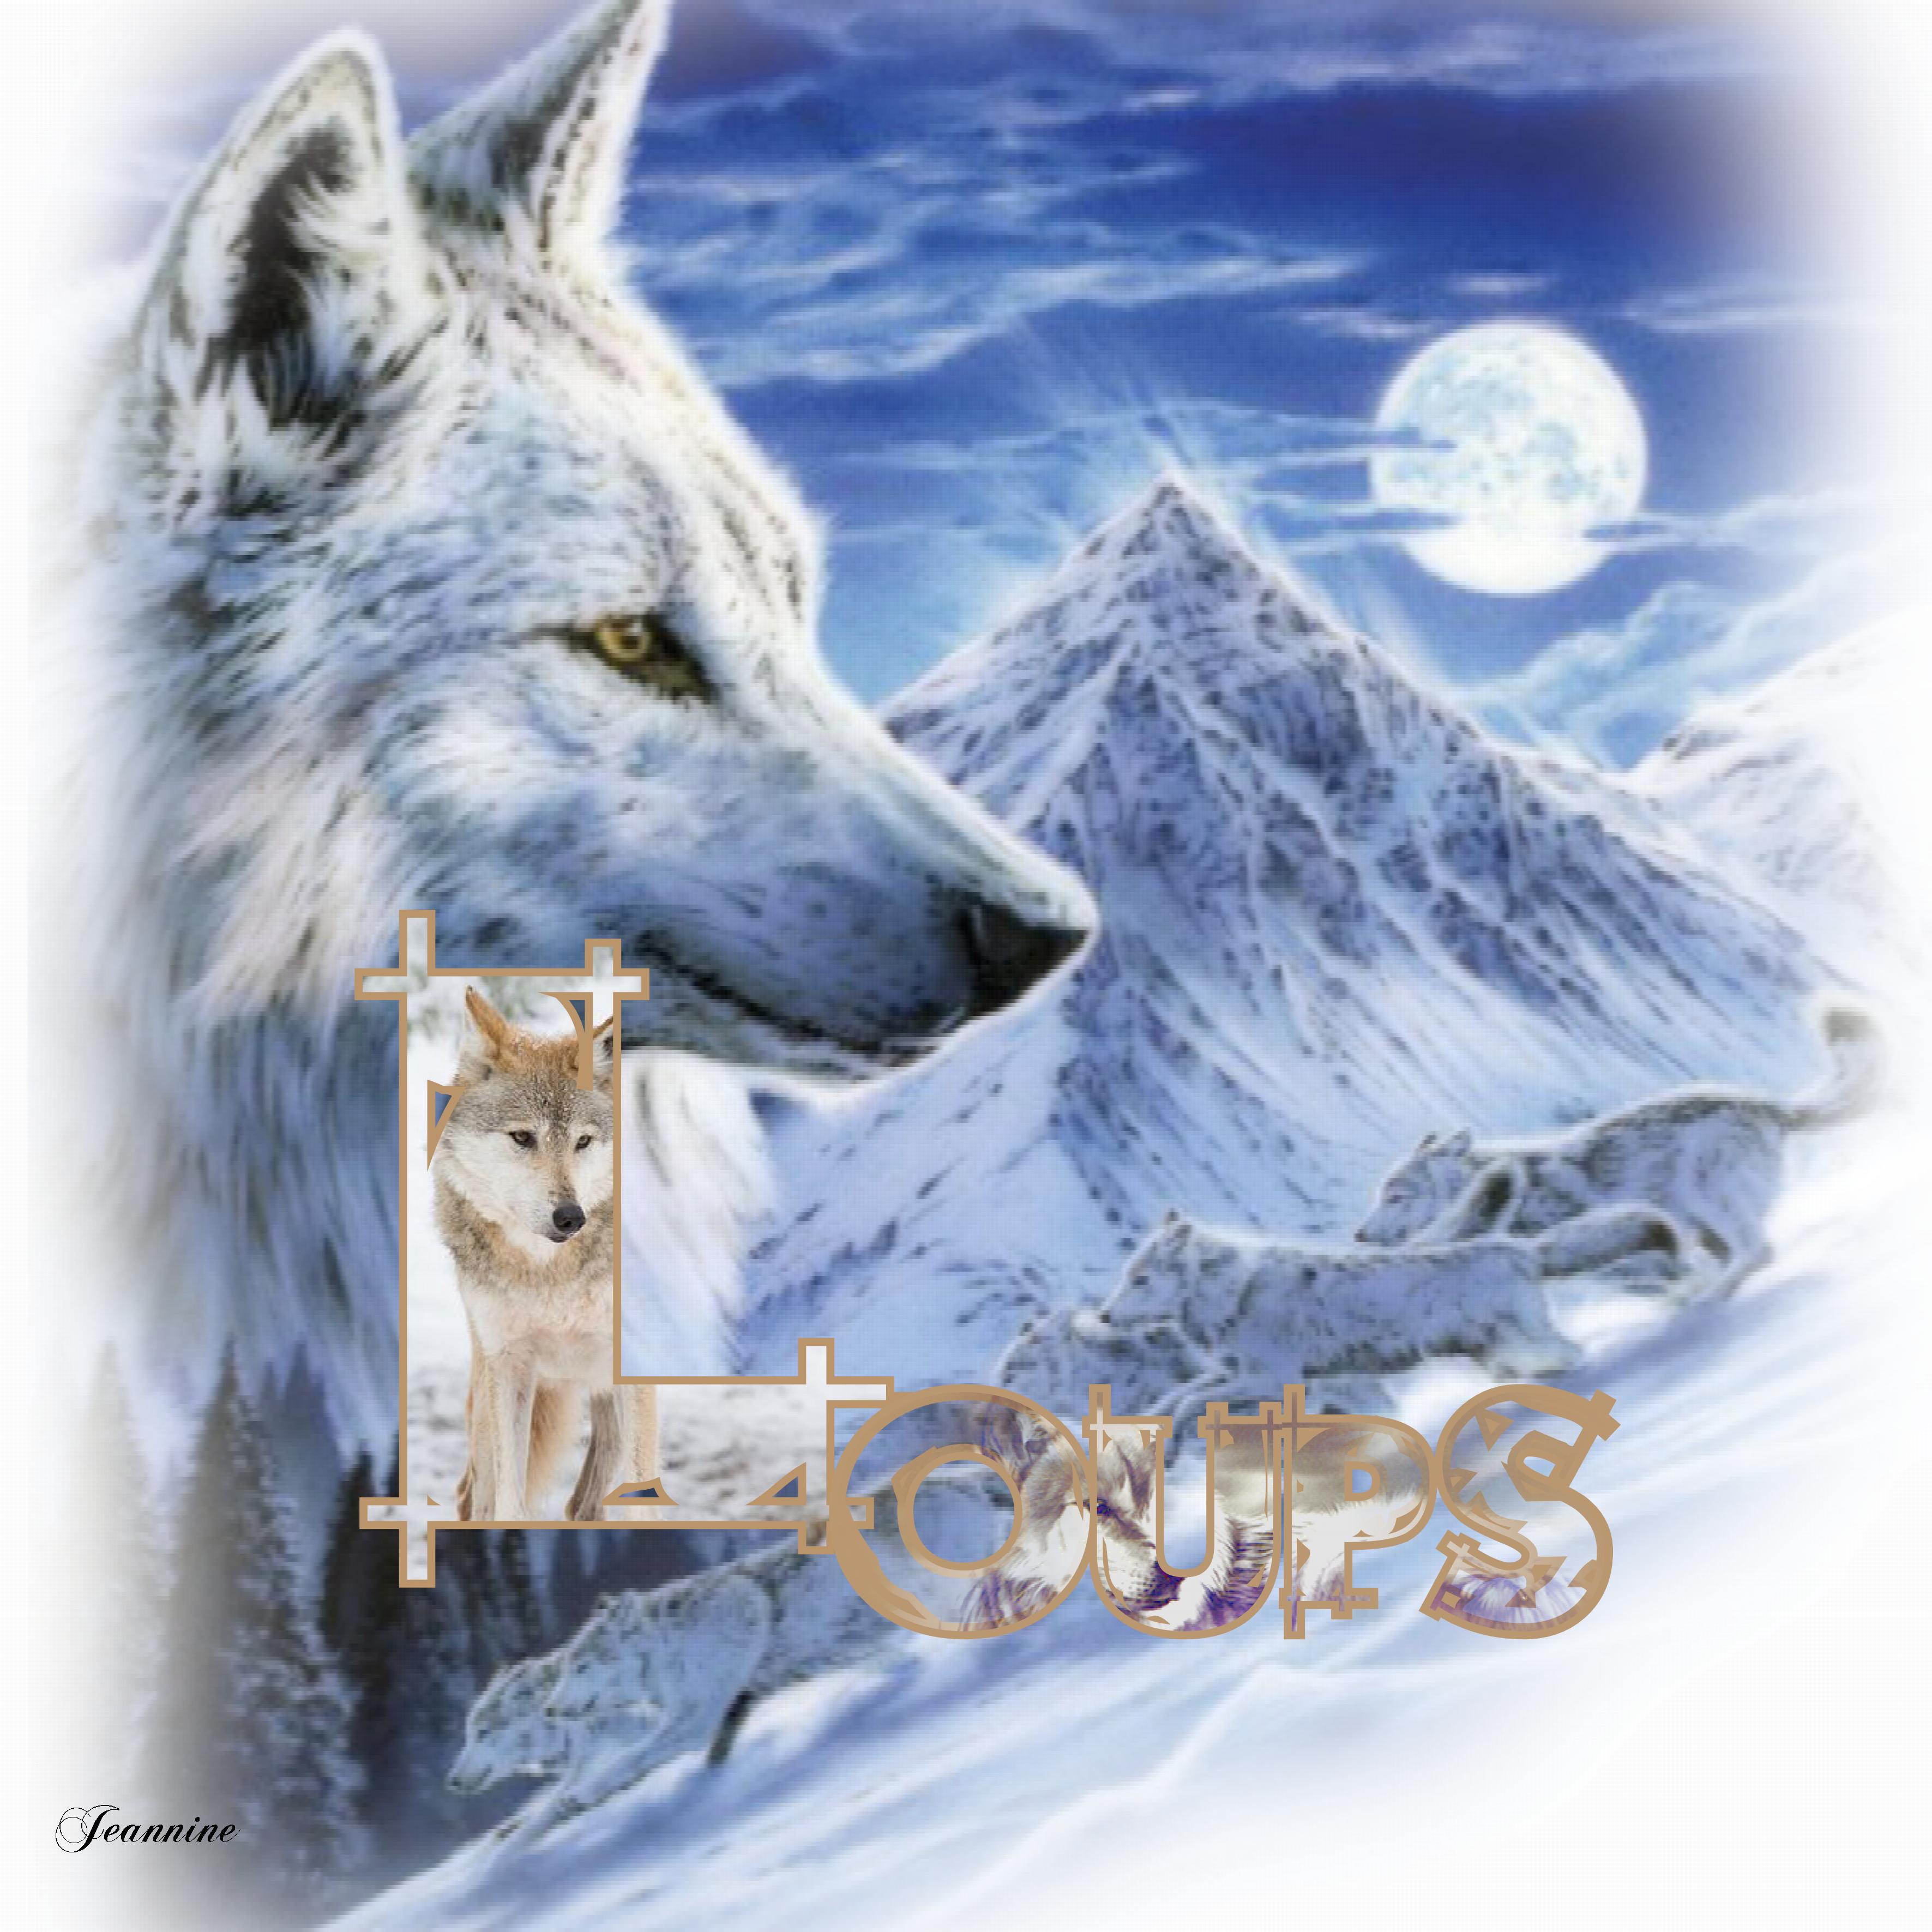 Loups avec lettrine  Jeannine.jpg